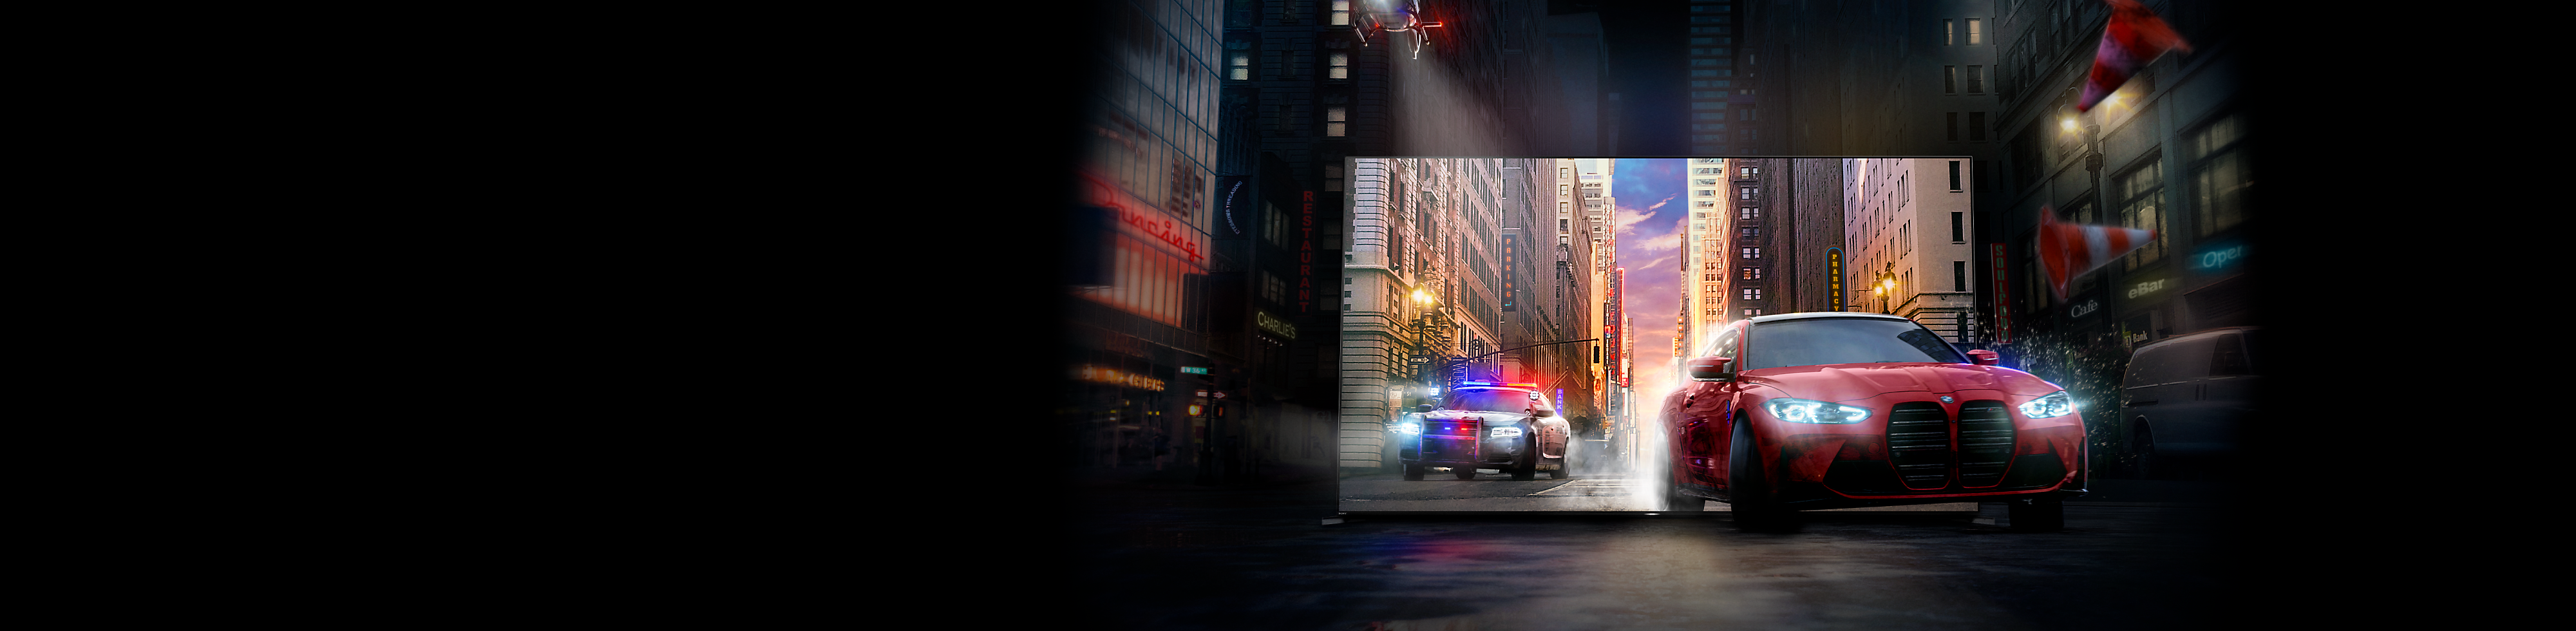 Червена кола, преследвана от полицейска кола, изскачат от екрана на телевизор BRAVIA на улица в града